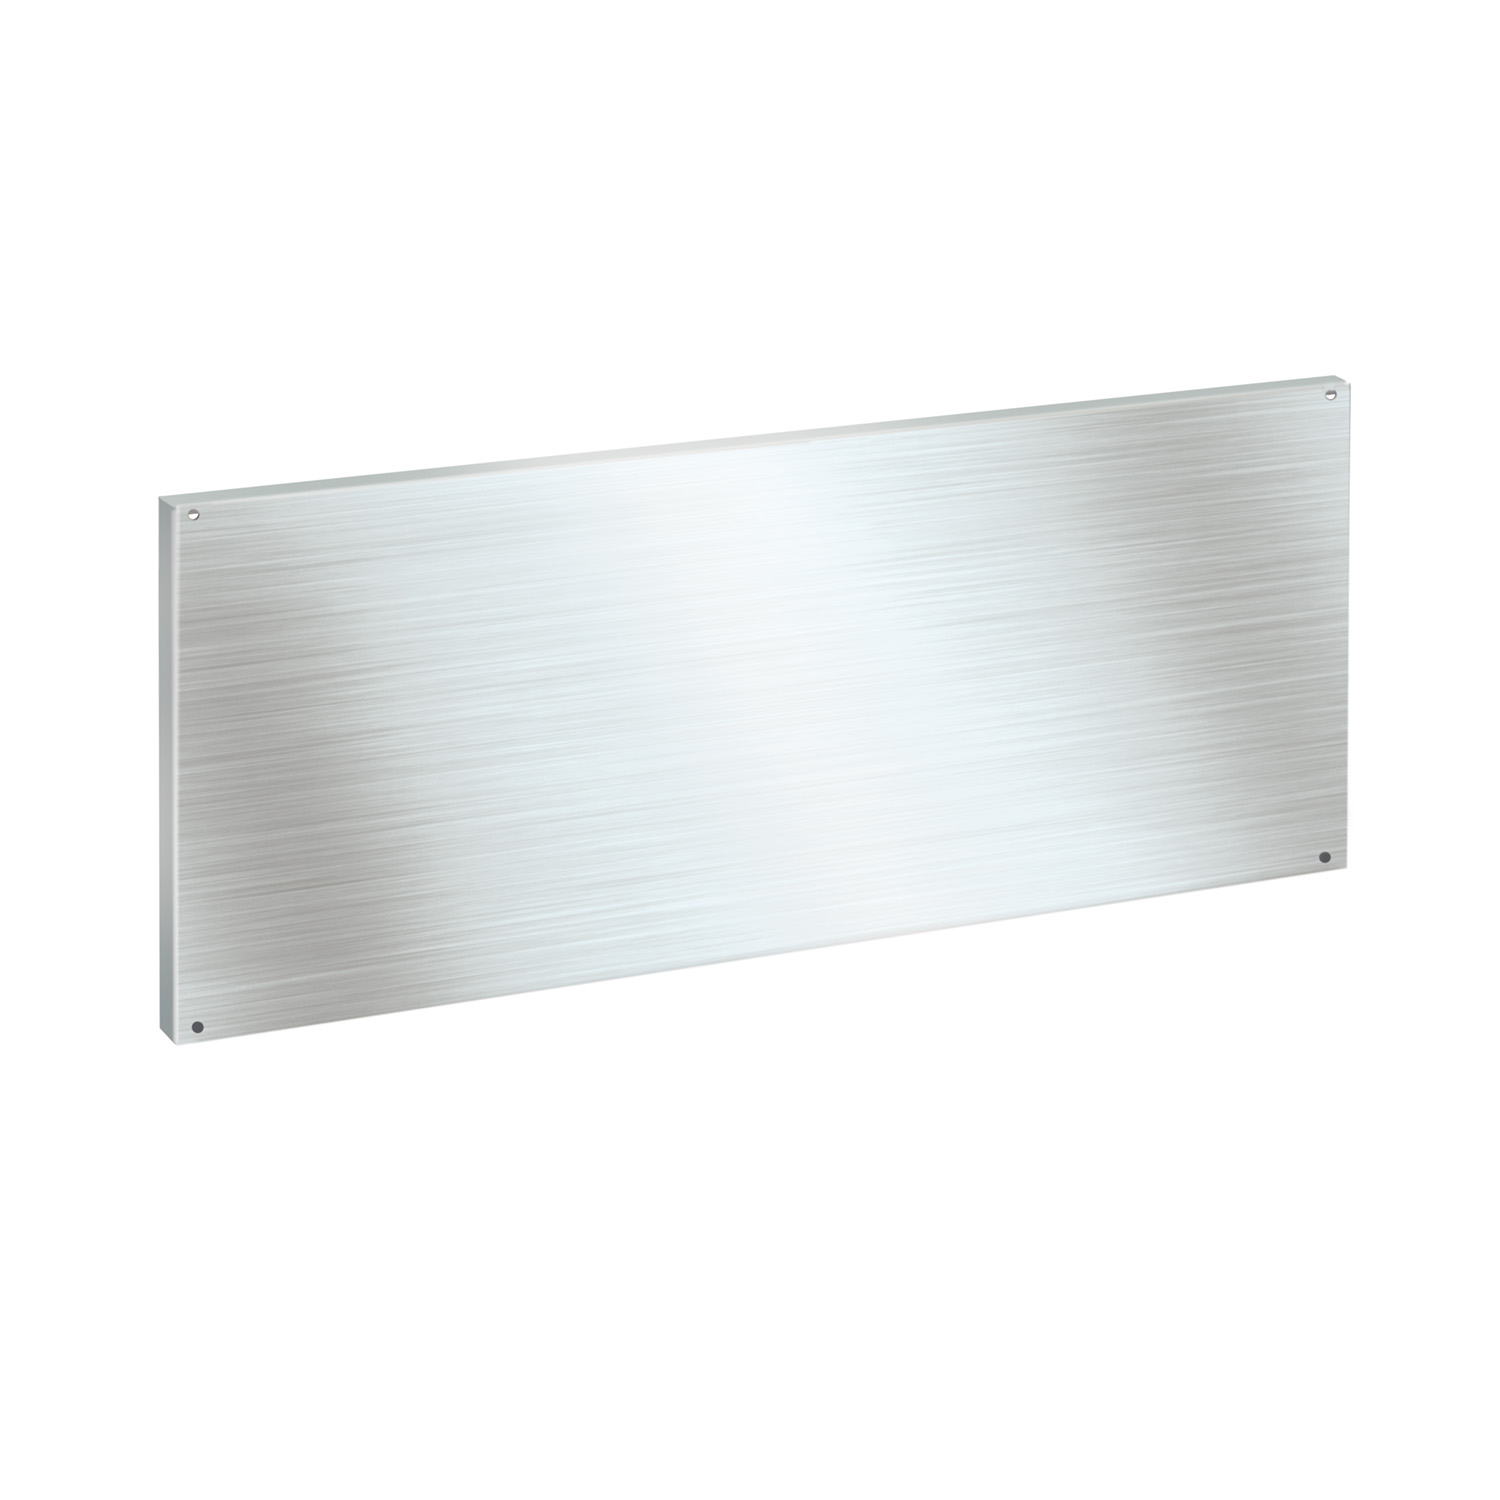 Paneles traseros de acero inoxidable (440 x 1200mm)